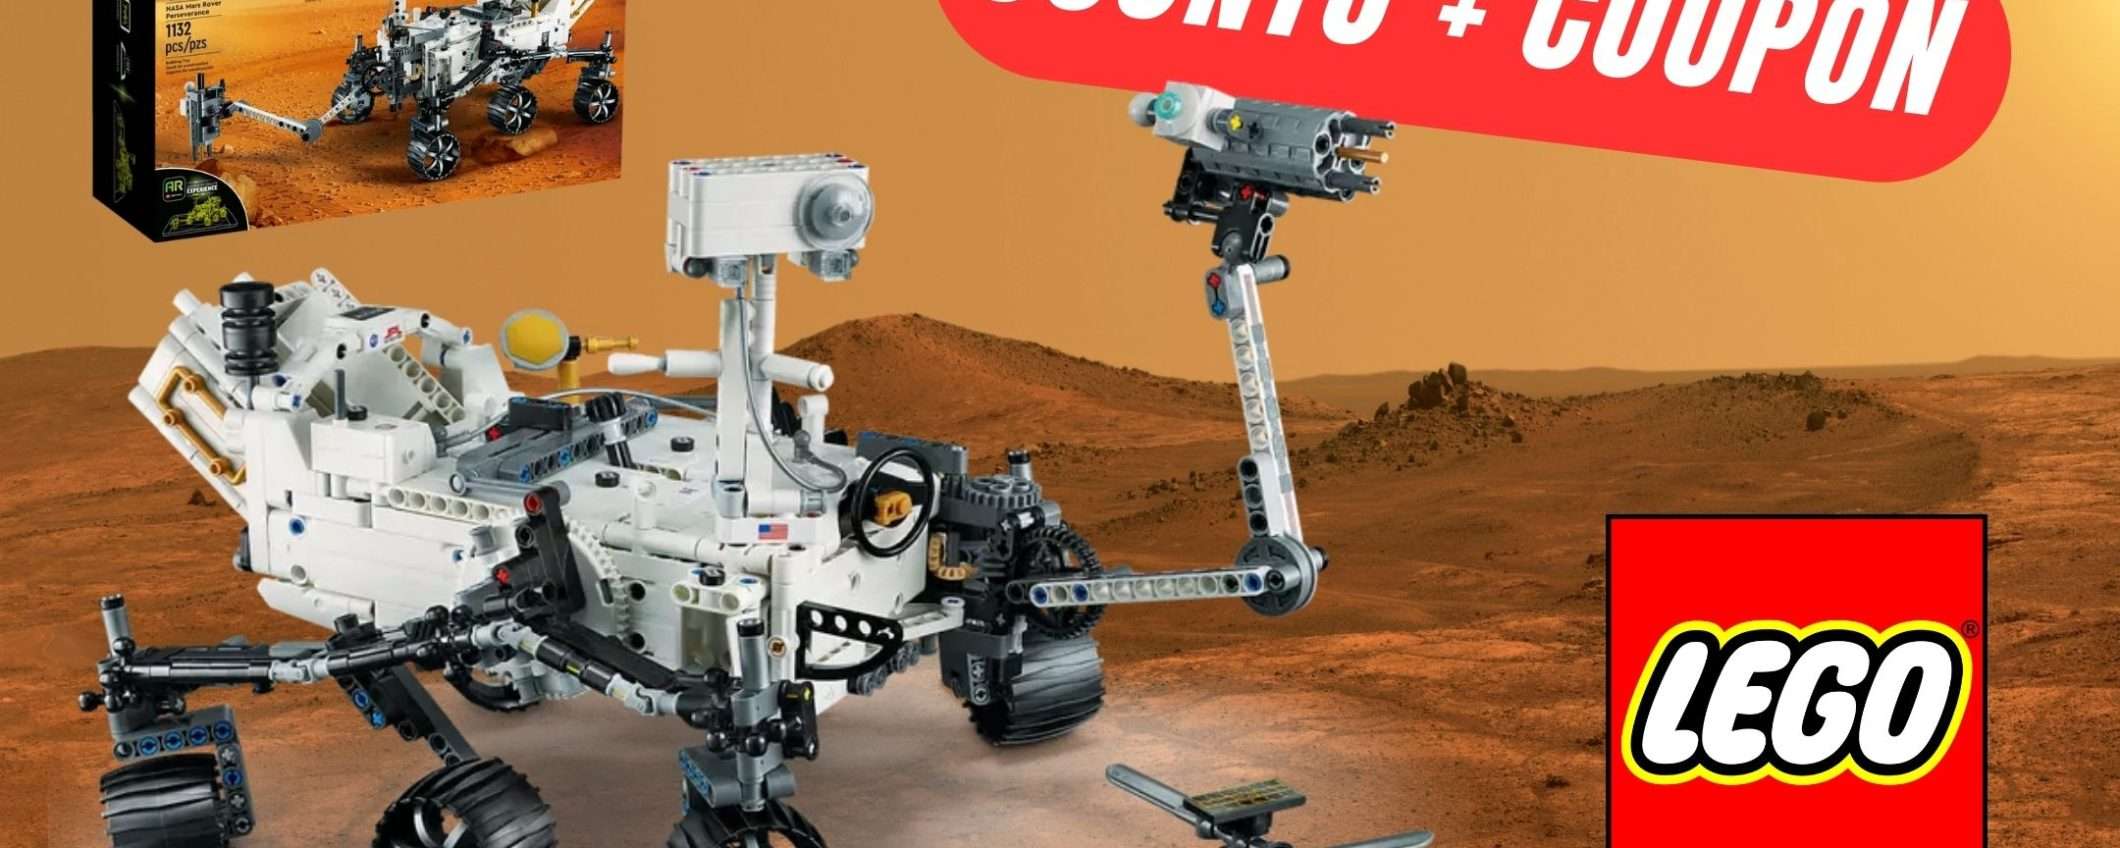 Sconto + Coupon per questo set LEGO Technic NASA che vi farà volare nello SPAZIO